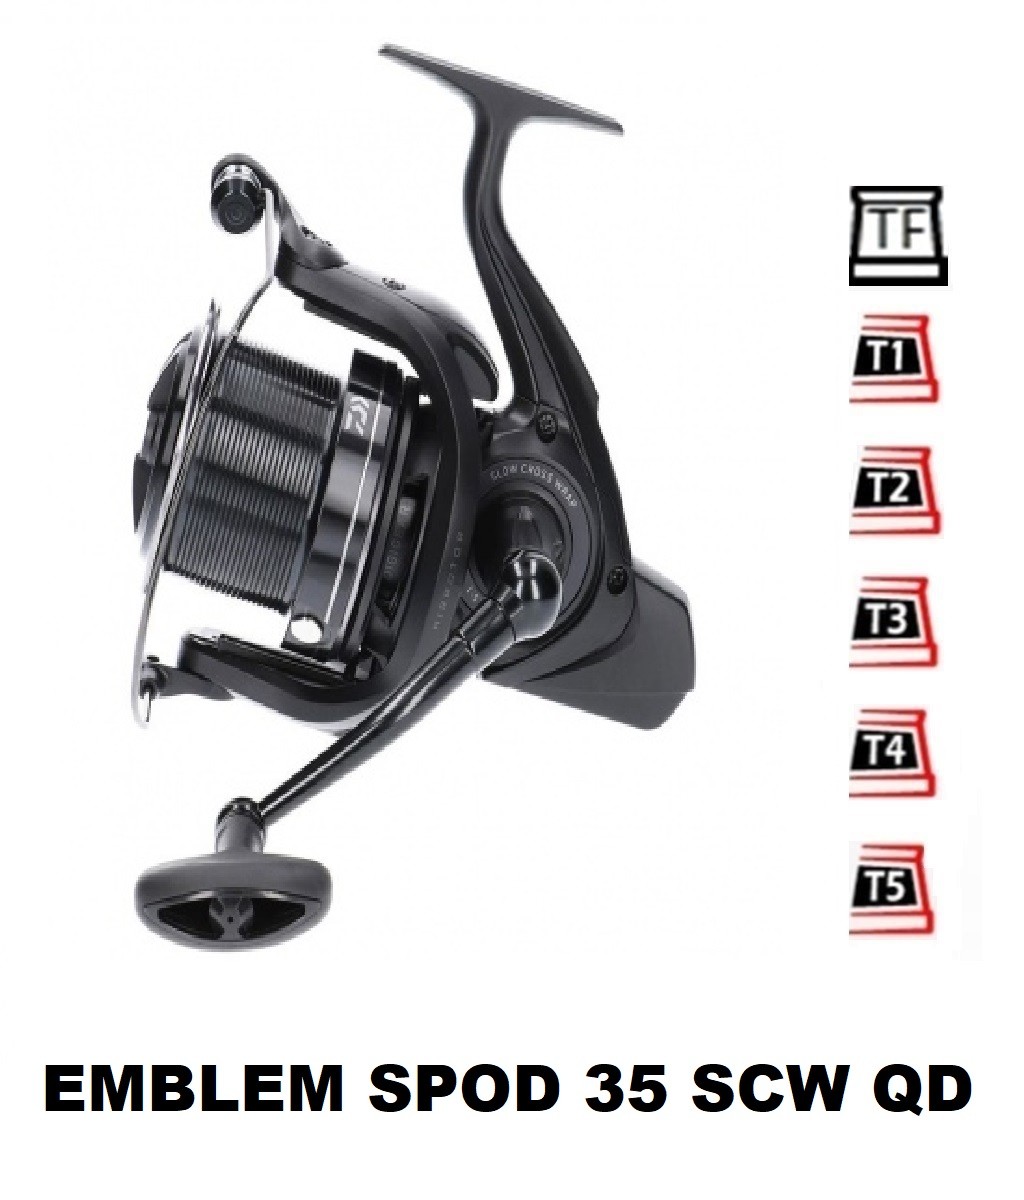 daiwa 19 Emblem Spod 35 SCW QD [2020]